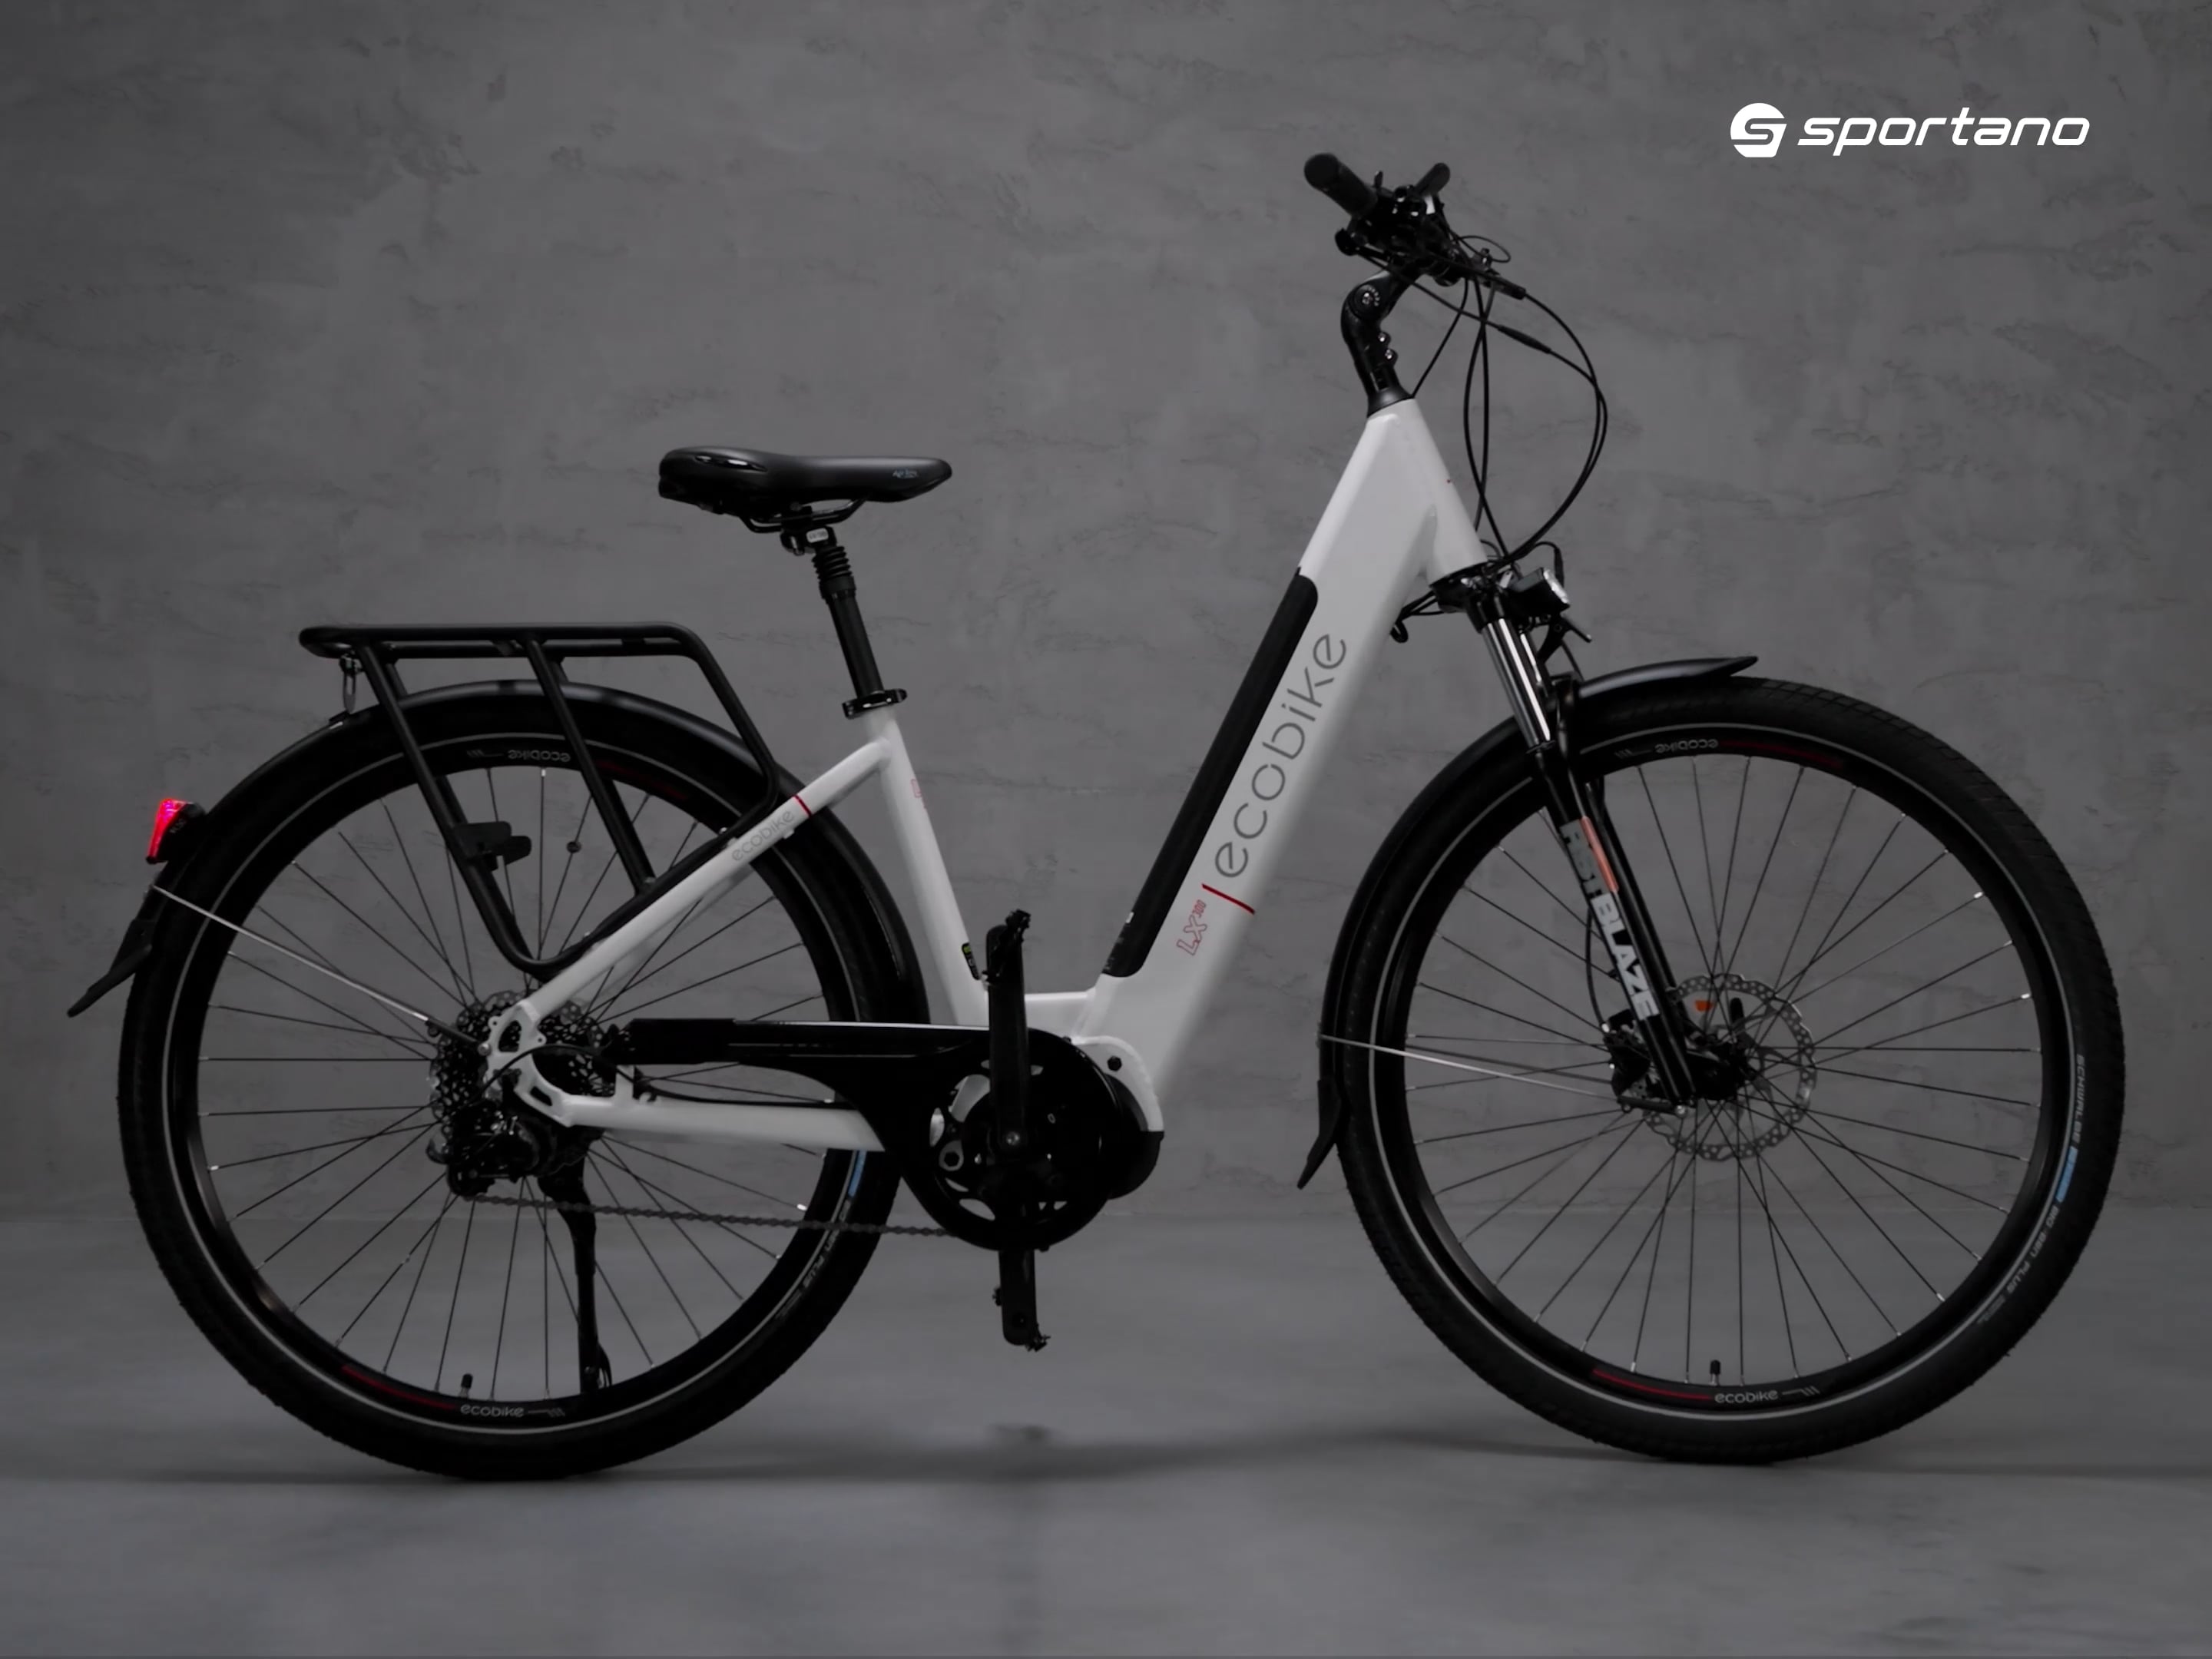 Elektromos kerékpár Ecobike LX300 LG fehér 1010306